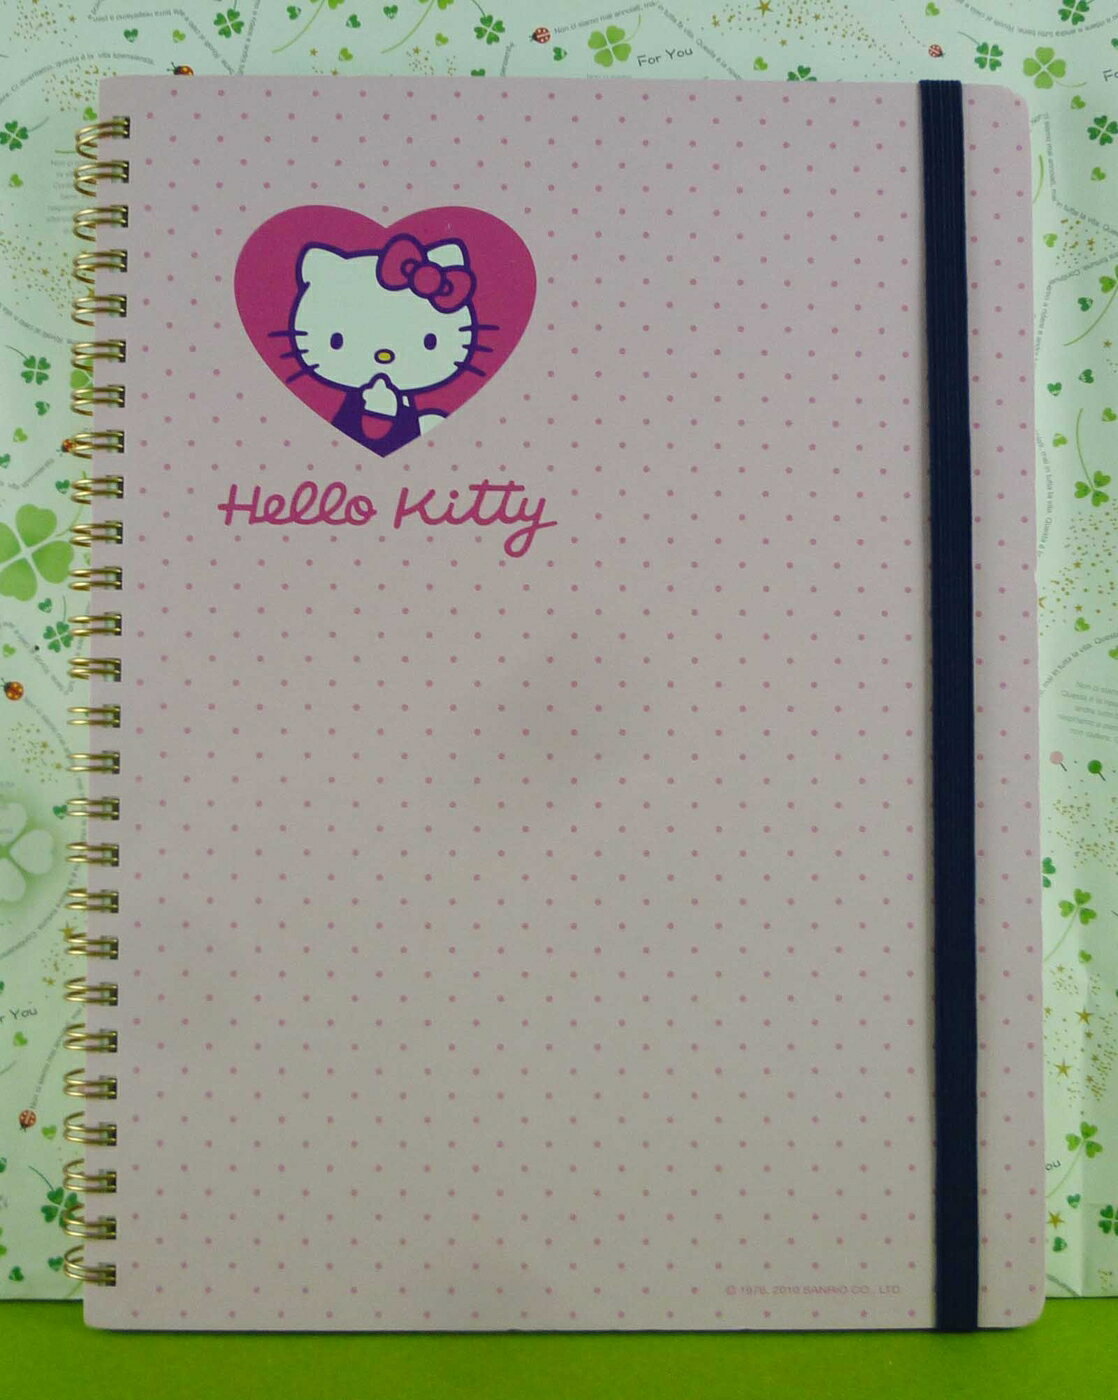 【震撼精品百貨】Hello Kitty 凱蒂貓 筆記本 愛心點點 淡粉紅【共1款】 震撼日式精品百貨